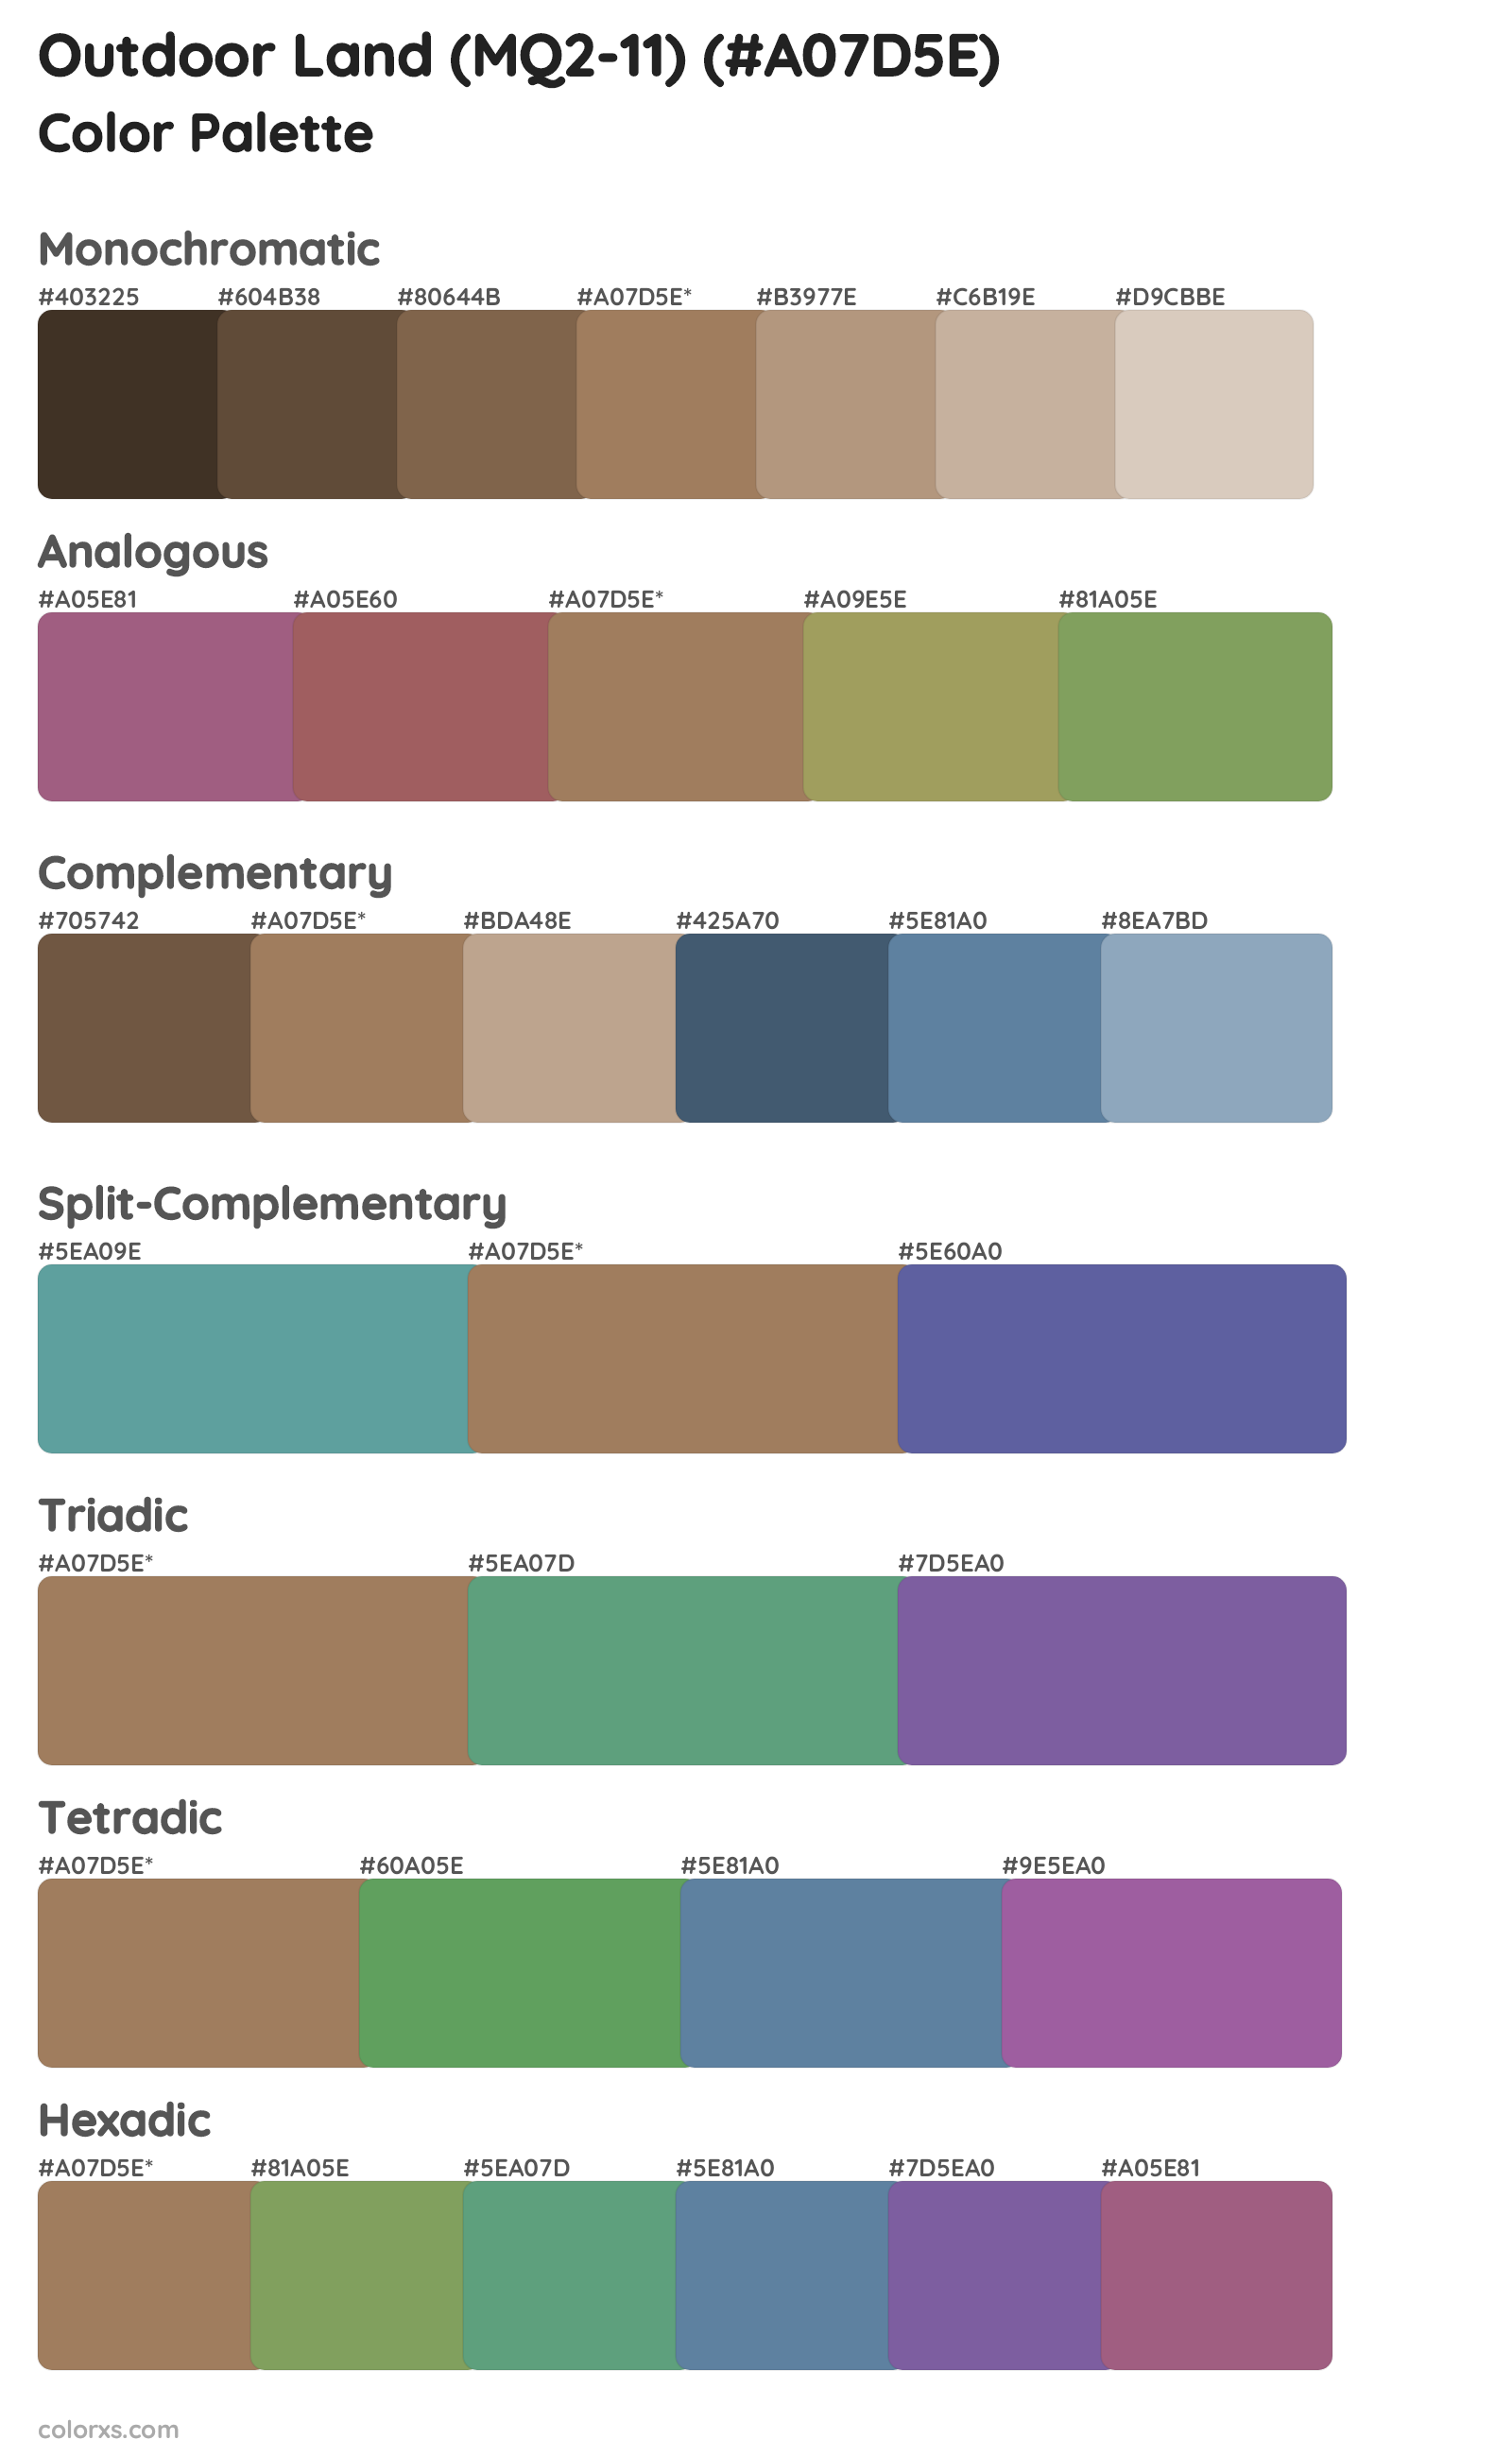 Outdoor Land (MQ2-11) Color Scheme Palettes